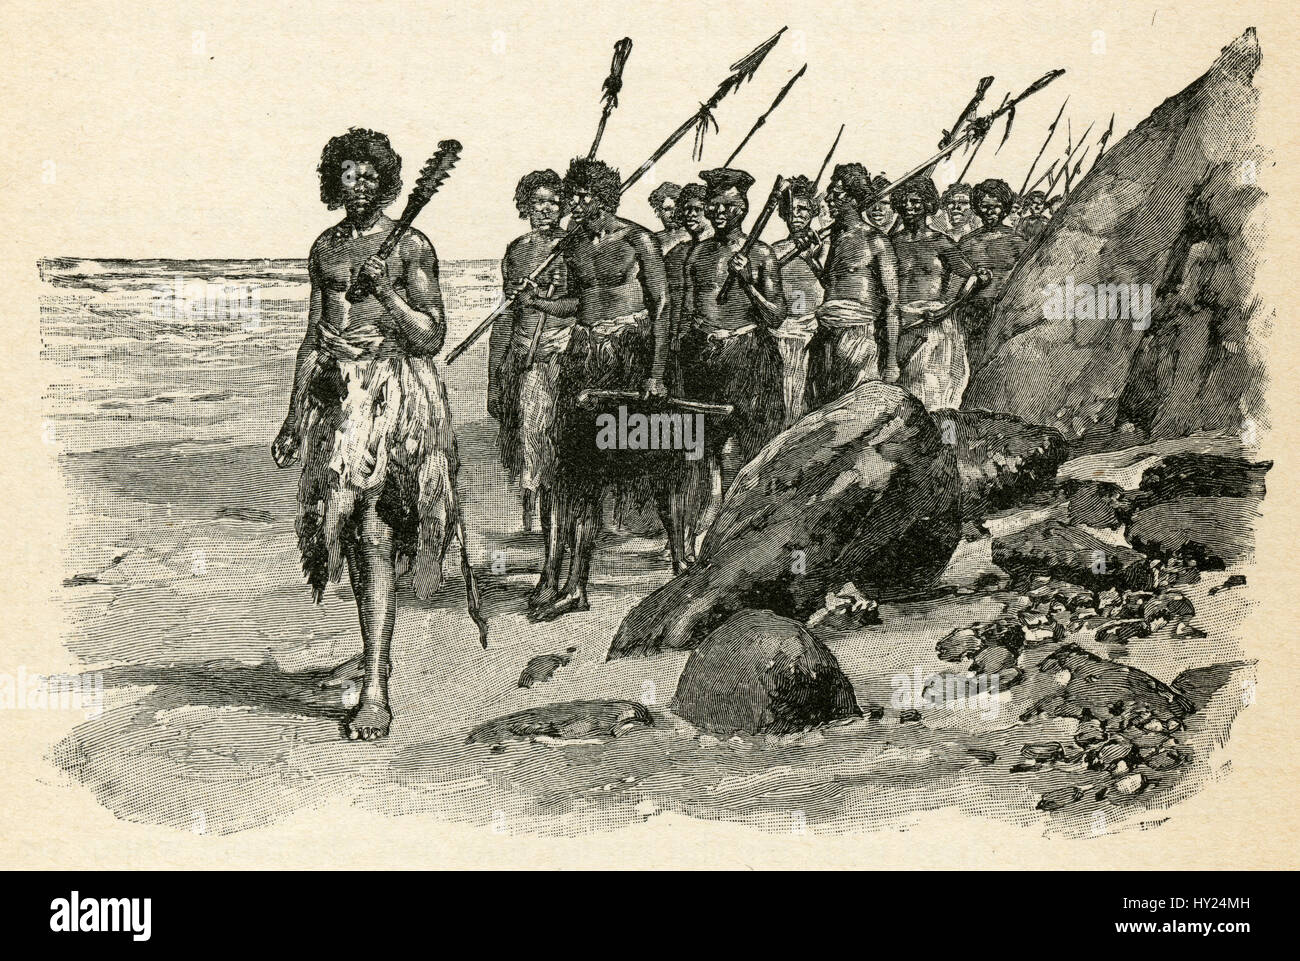 1910er Jahre Gravur von Robinson Crusoe von Daniel Defoe: "Kam am Ufer reichen." Illustriert von Walter Paget. Stockfoto